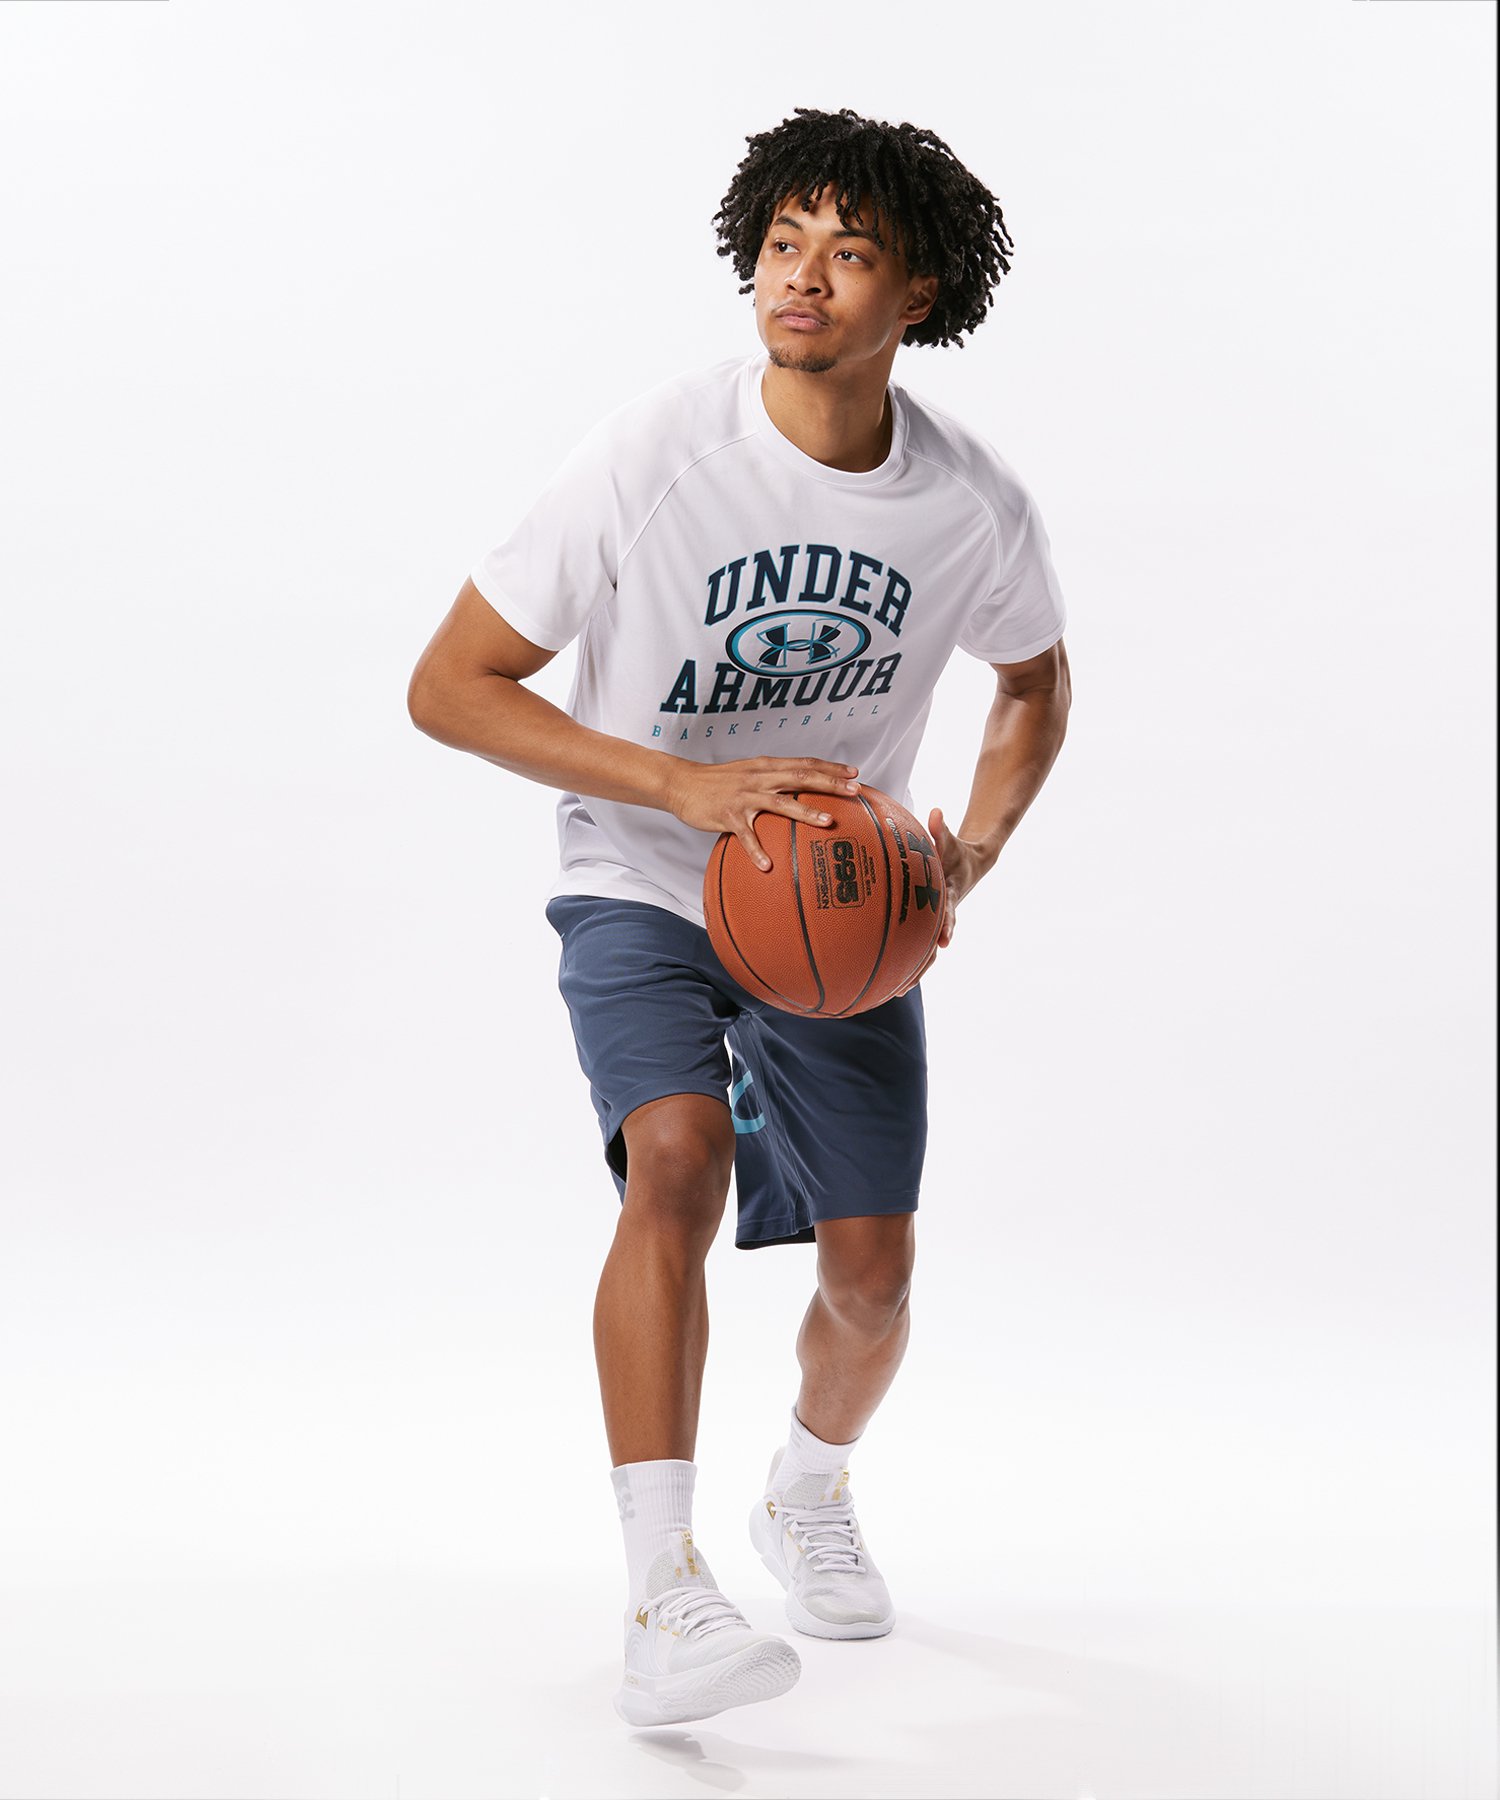 [40%OFF] официальный Under Armor UNDER ARMOUR мужской баскетбол шорты UA основа линия шорты ( большой Logo )ba Span шорты 